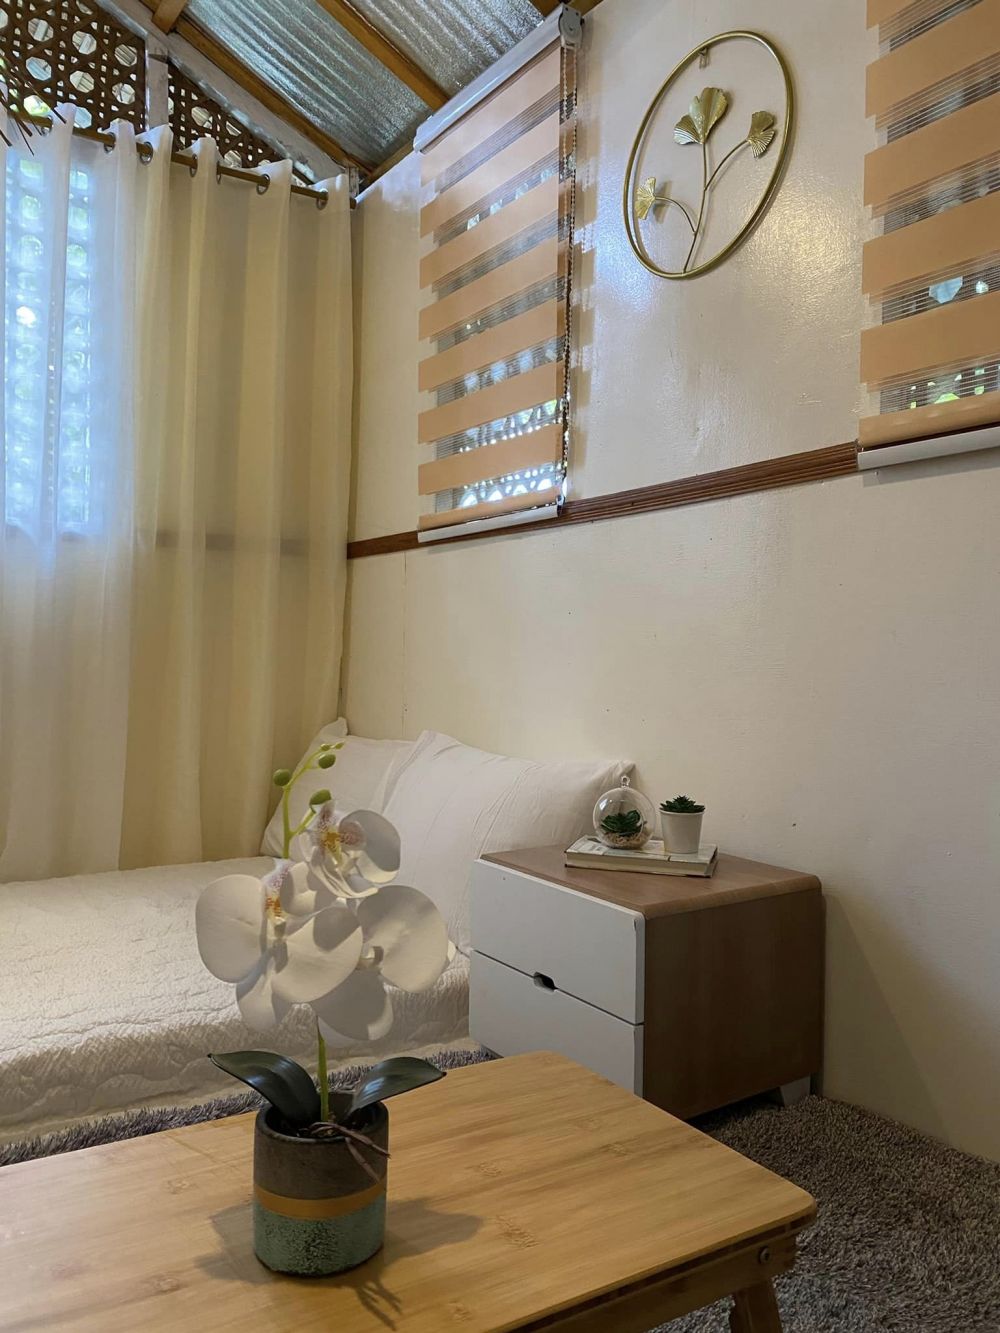 Bukti jangan nilai rumah dari luarnya, 9 potret bilik bambu ini interiornya mirip apartemen mewah